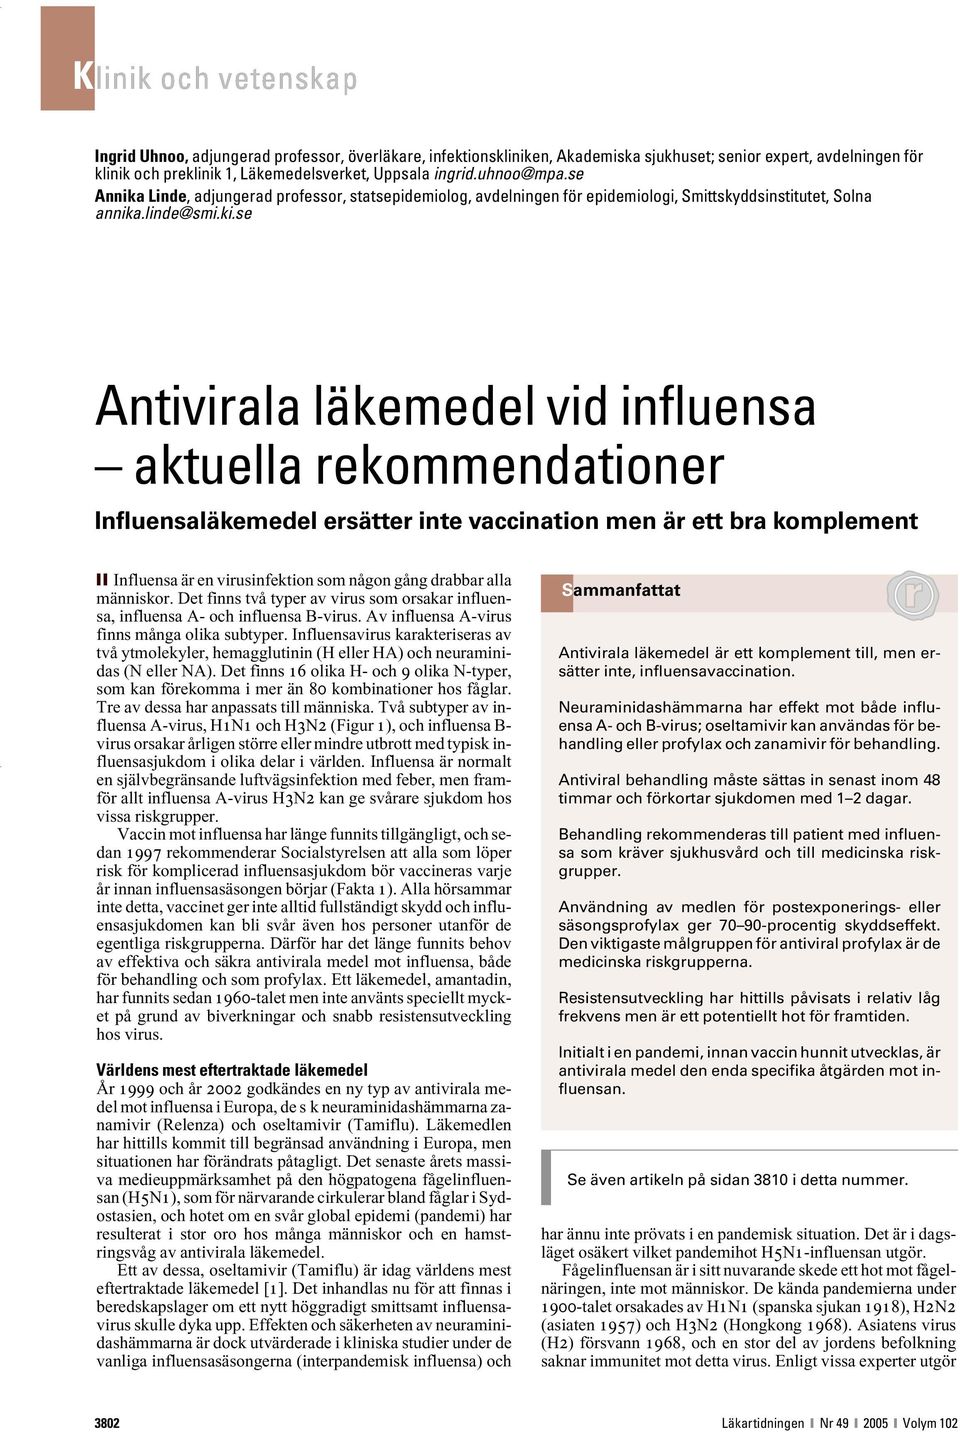 se Antivirala läkemedel vid influensa aktuella rekommendationer Influensaläkemedel ersätter inte vaccination men är ett bra komplement Influensa är en virusinfektion som någon gång drabbar alla